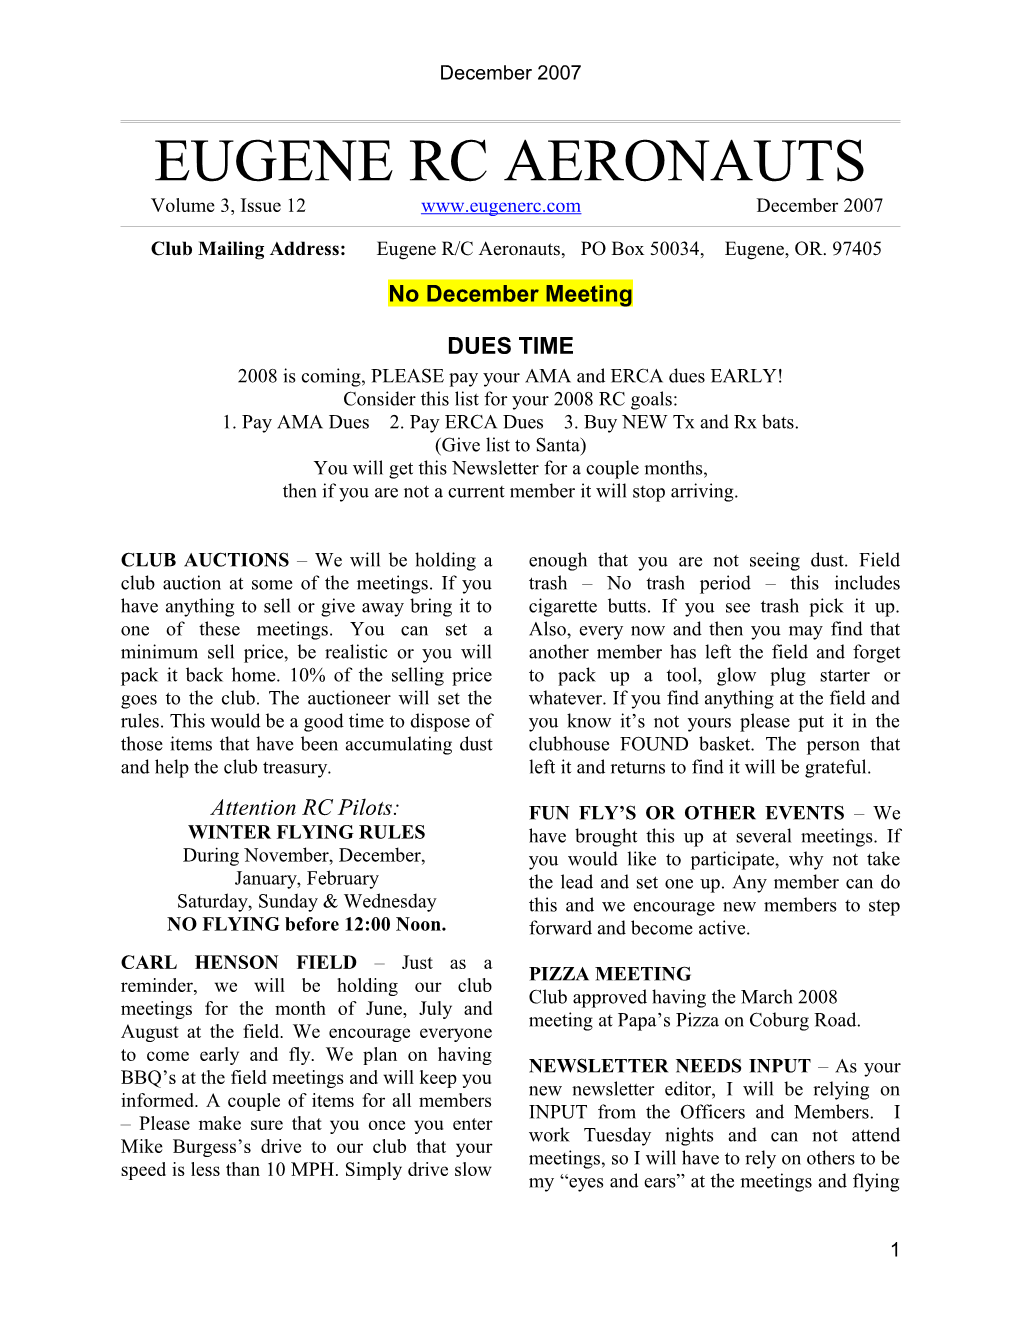 Eugene Rc Aeronauts